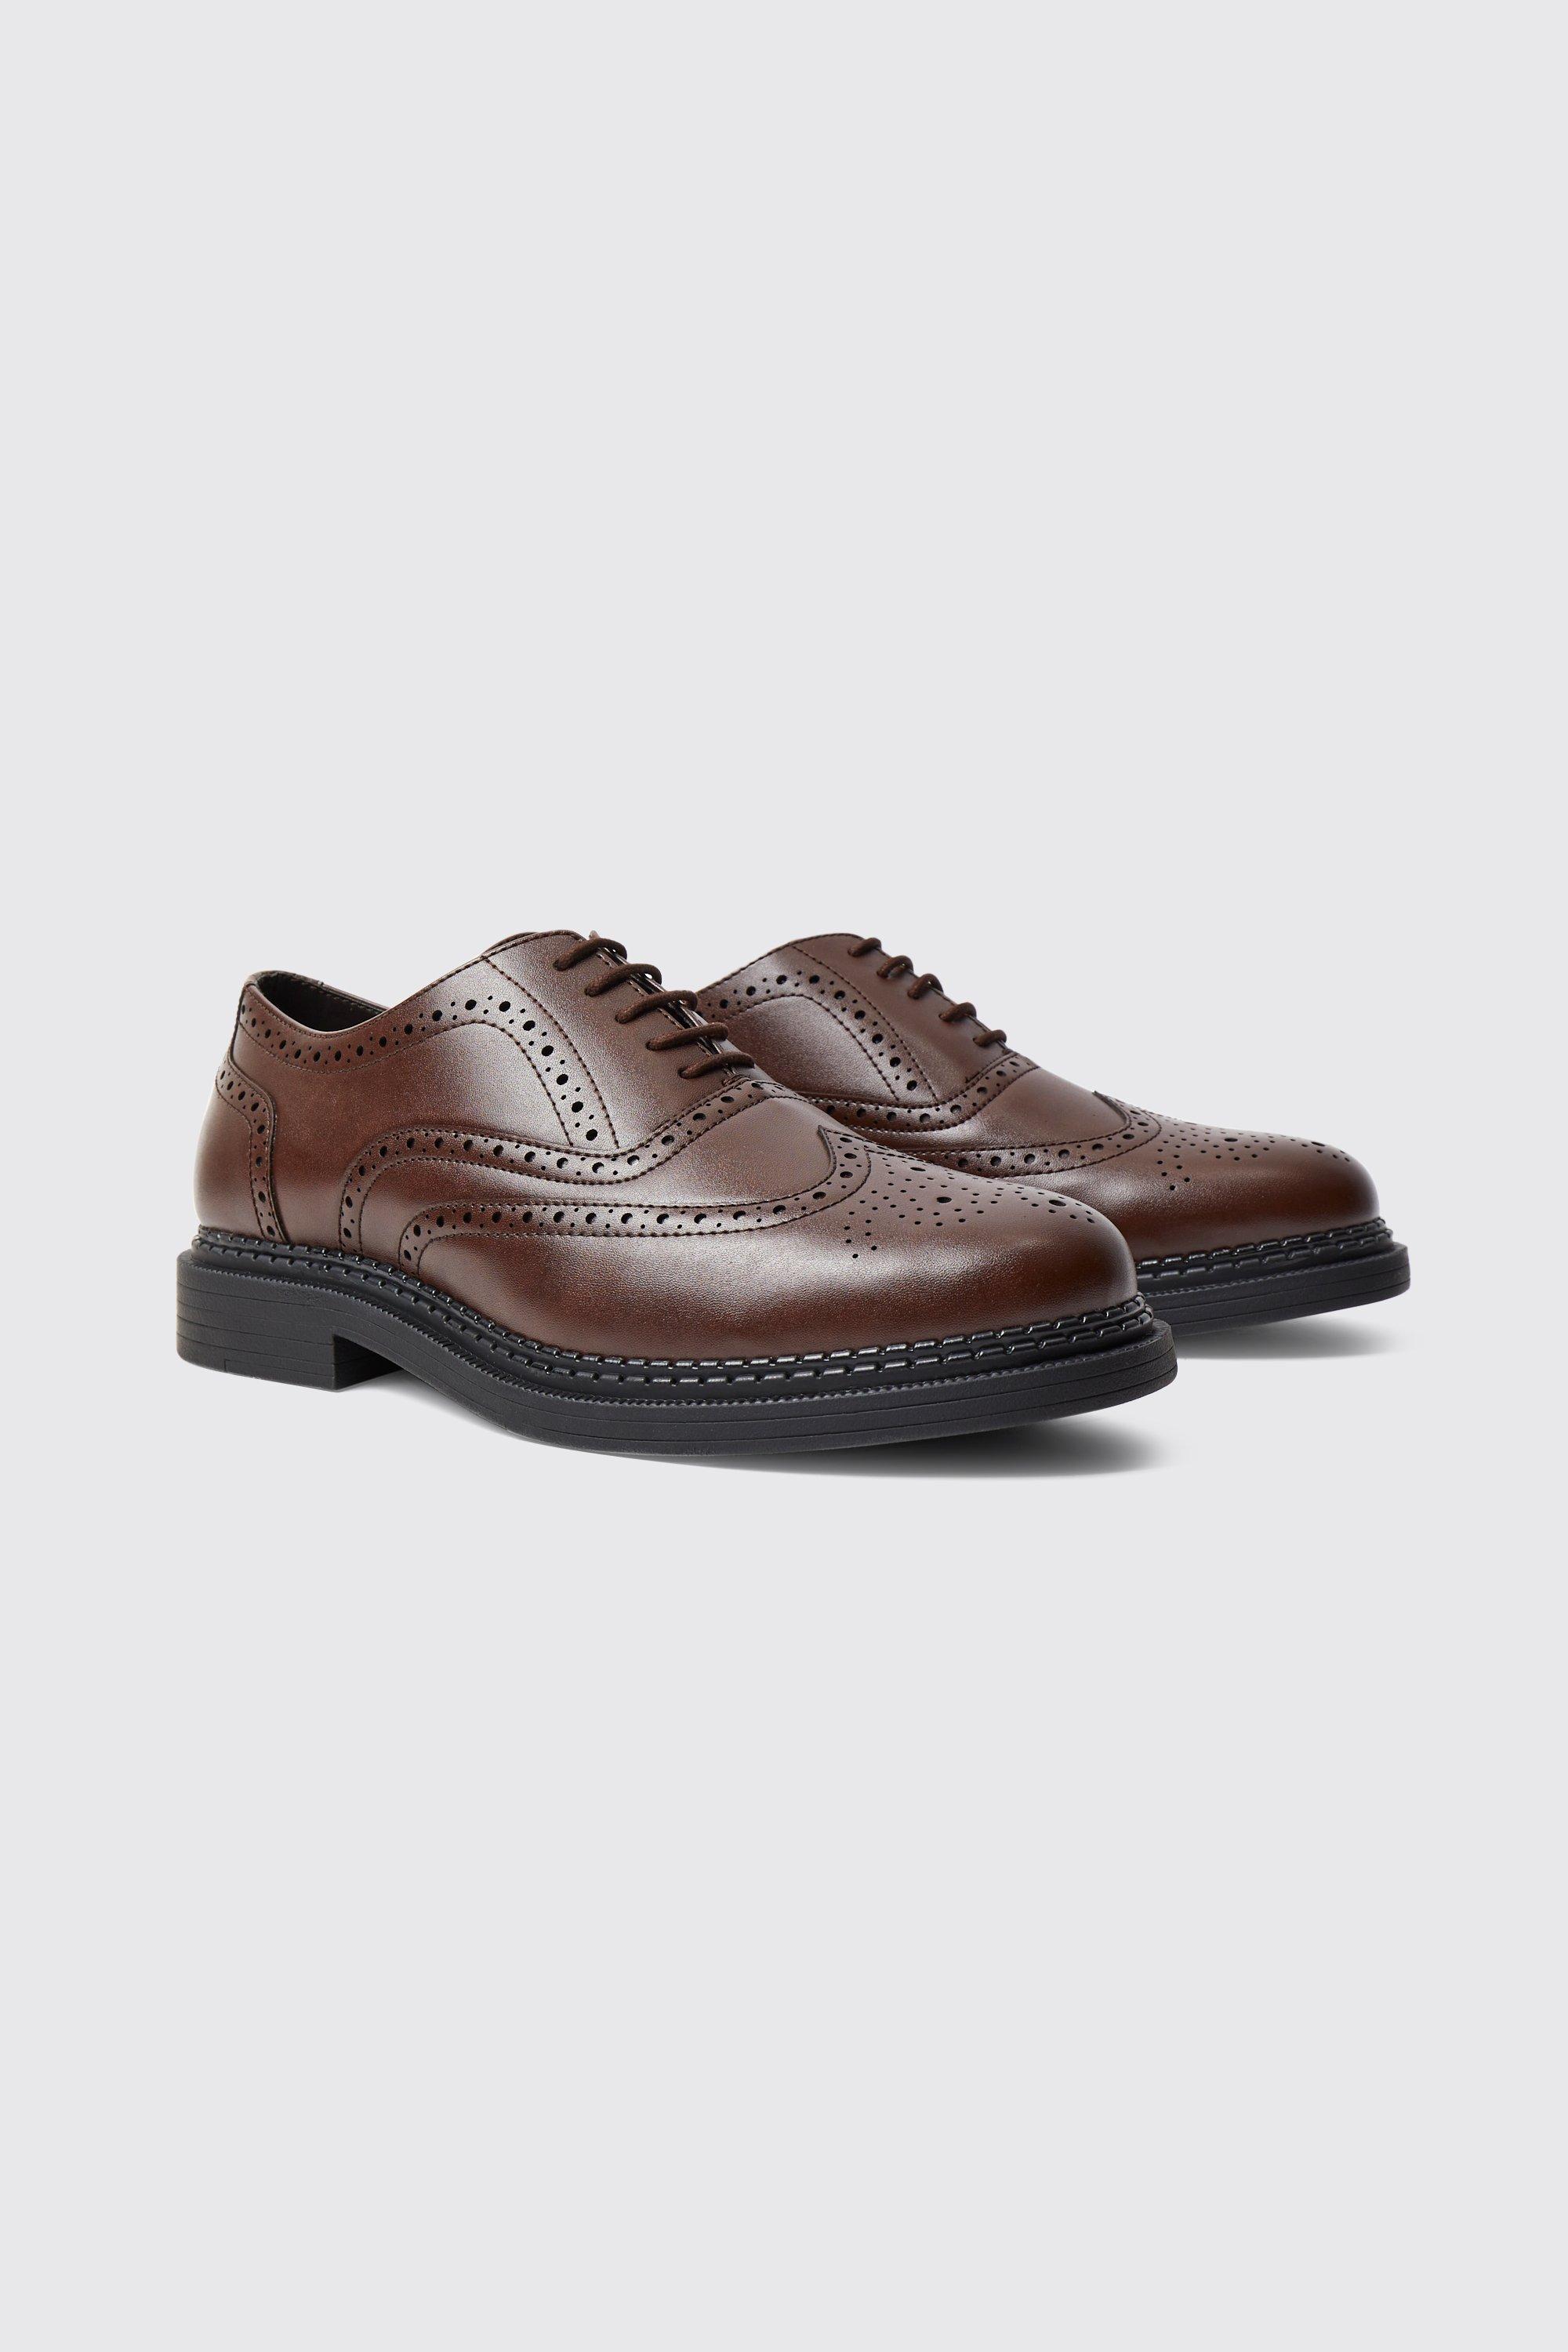 chaussures derbies classiques en simili homme - marron - 44, marron